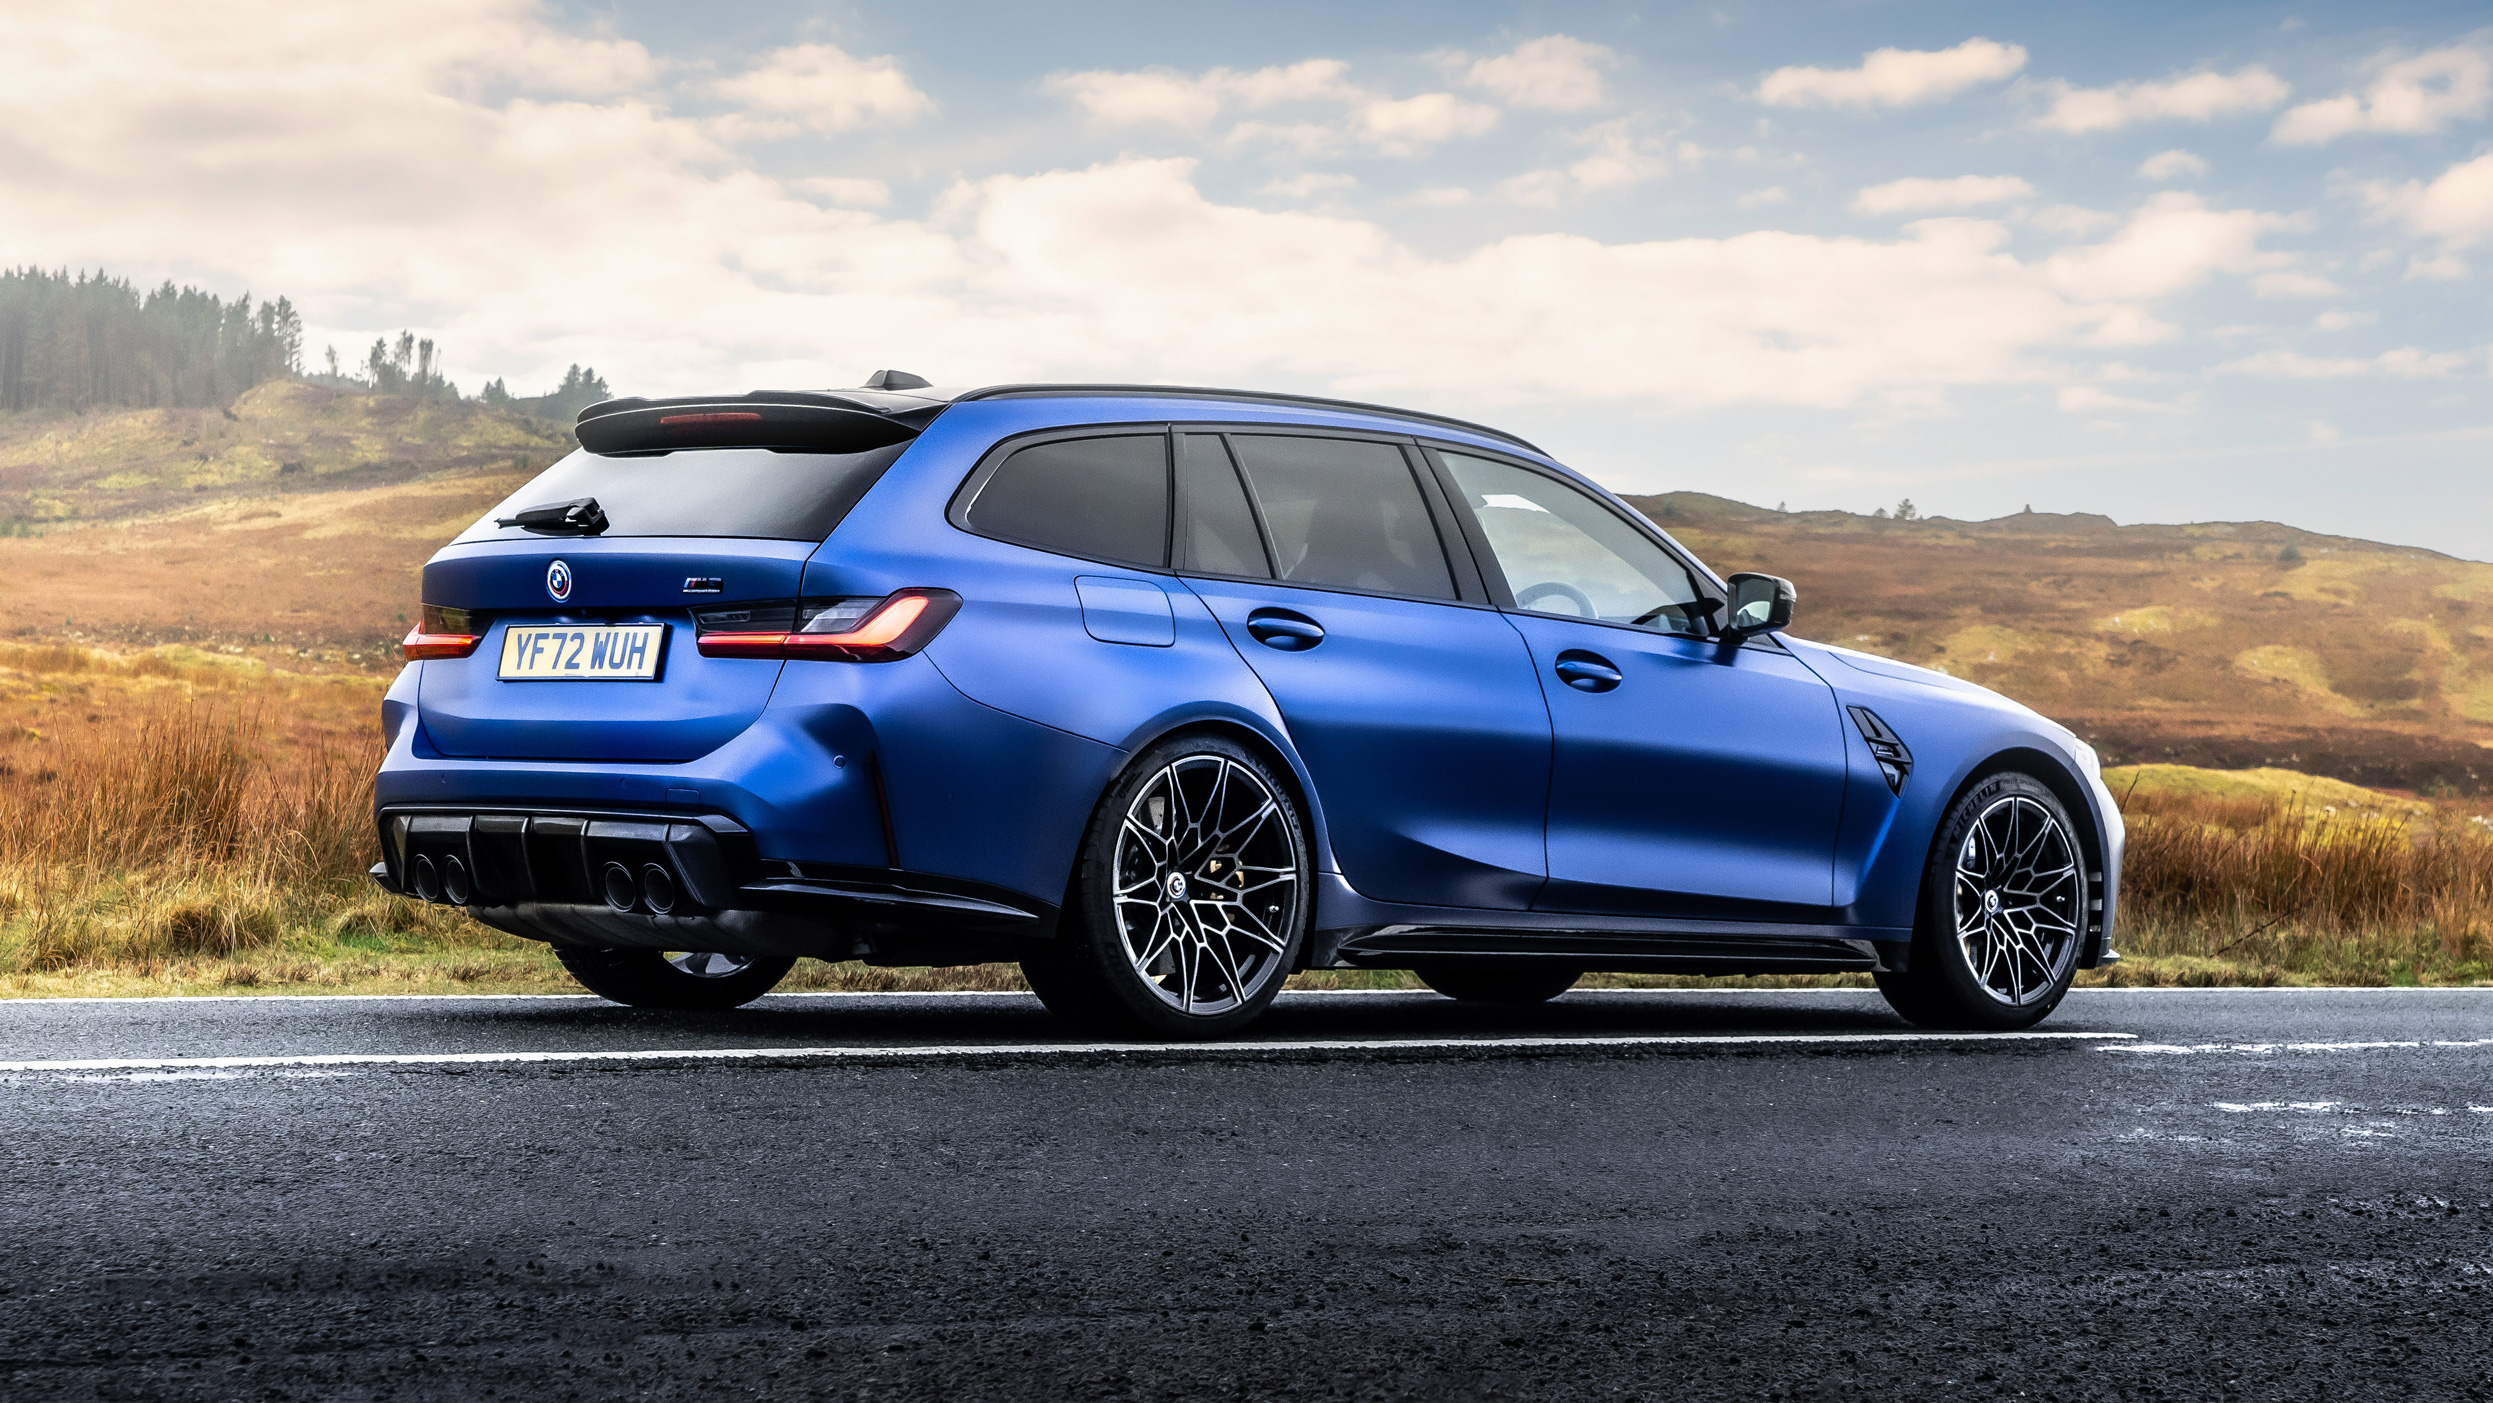 Начались тесты первого BMW M3 Touring